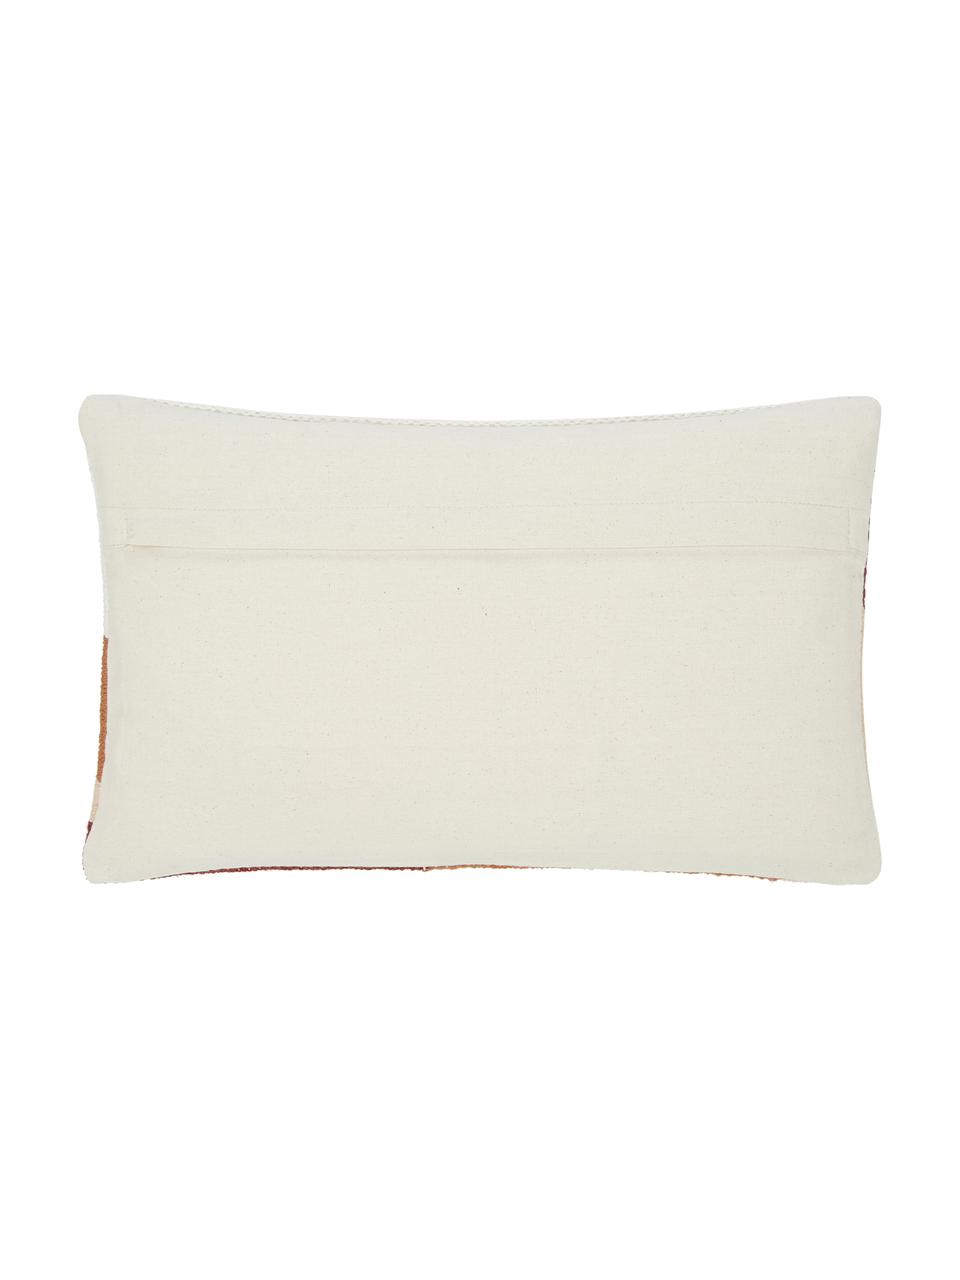 Ručně tkaný povlak na polštář s abstraktním vzorem Beta, 100% bavlna, Růžová, bílá, Š 30 cm, D 50 cm